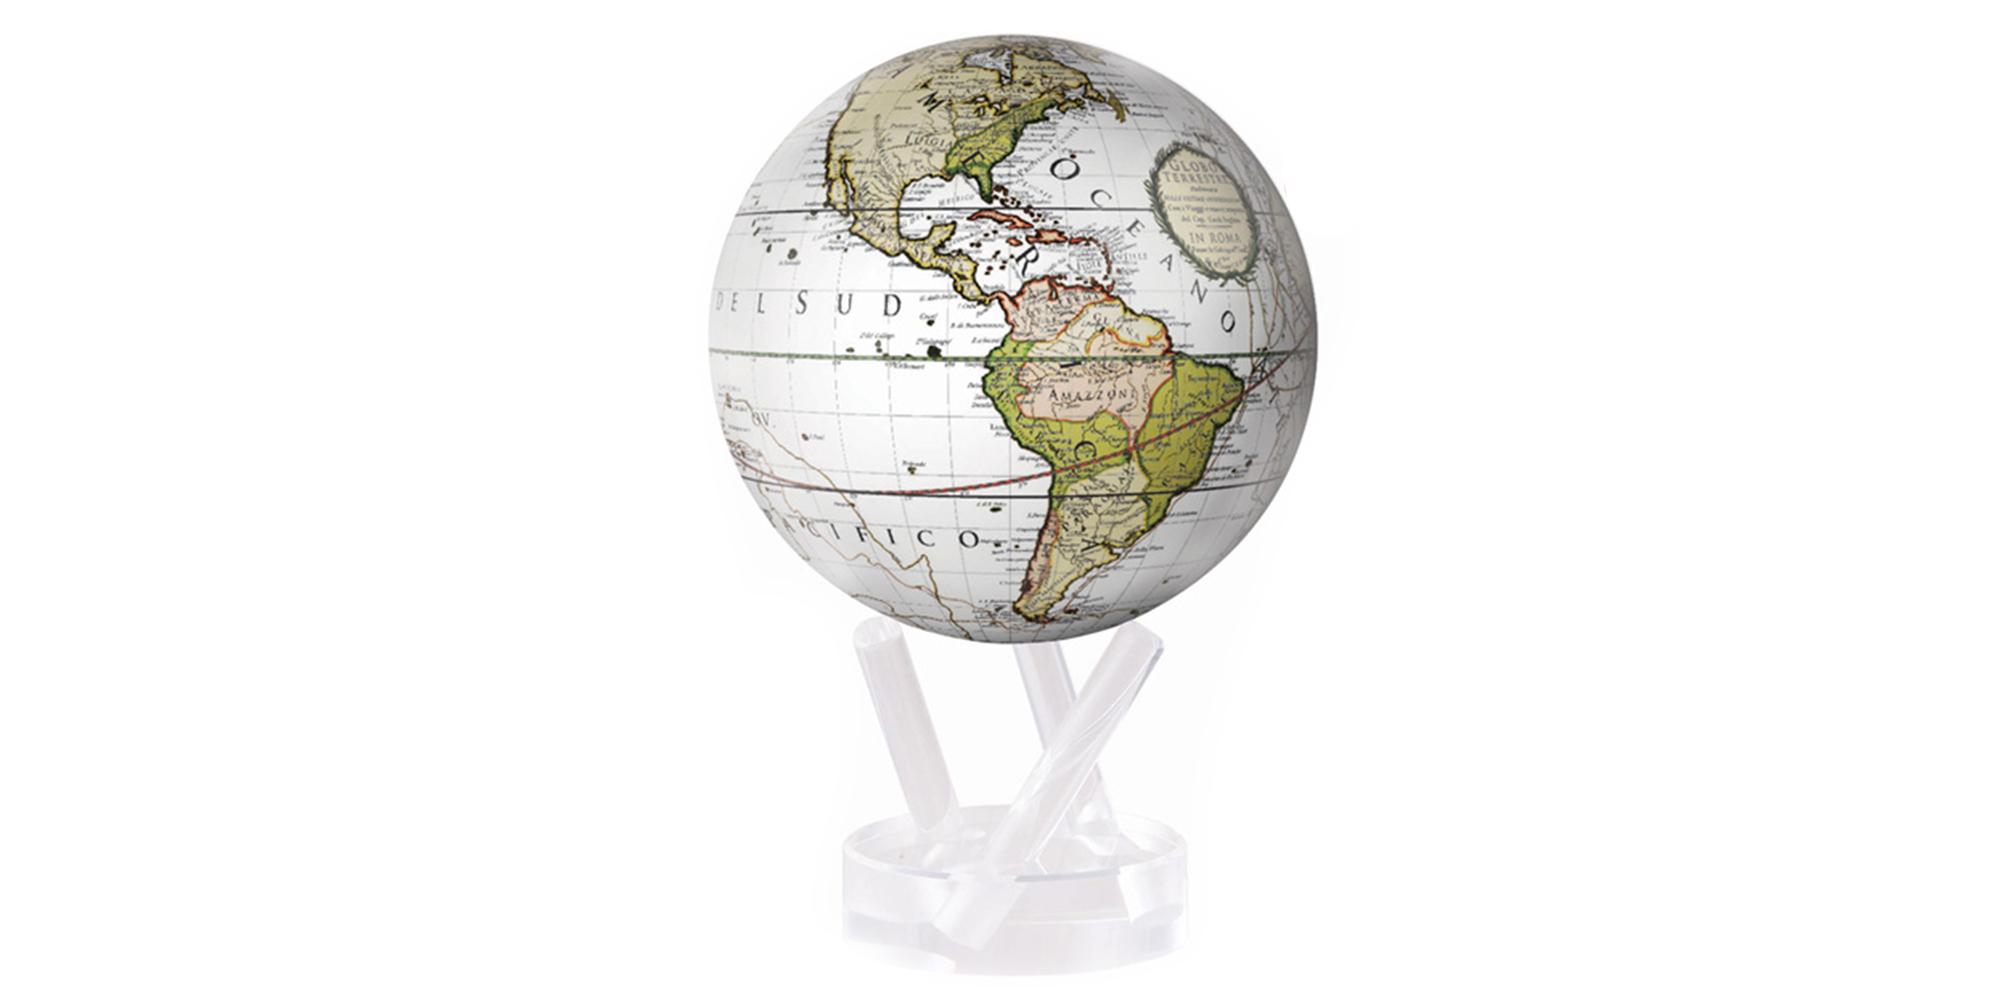 Mova globe